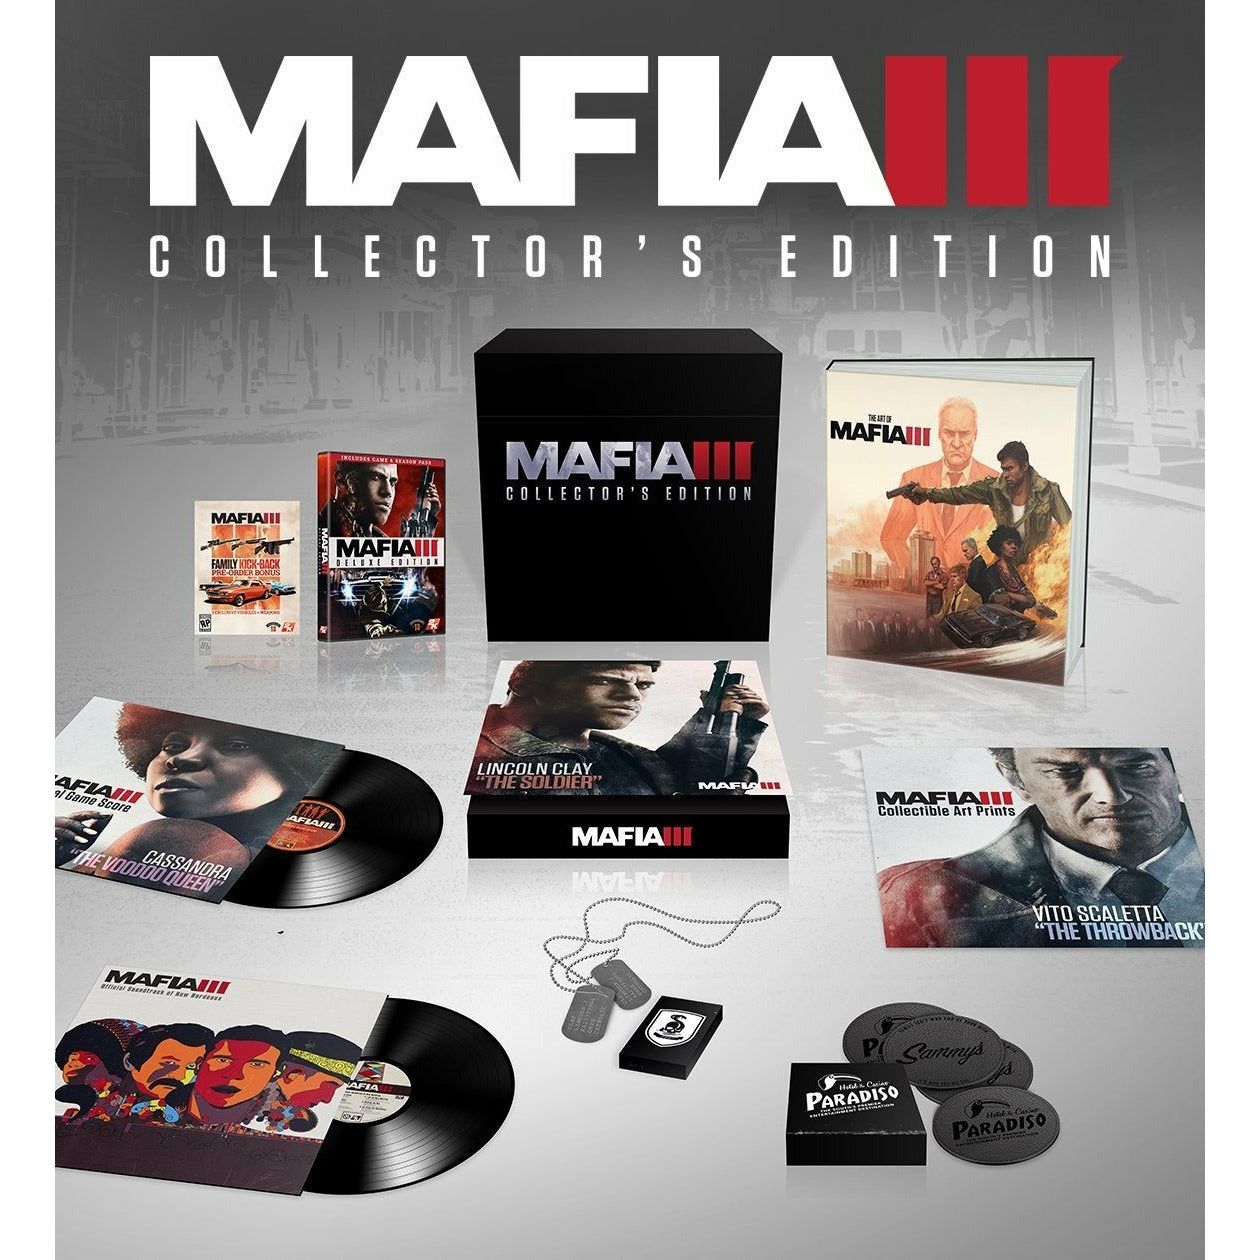 XBOX ONE - Mafia III Collector's Edition